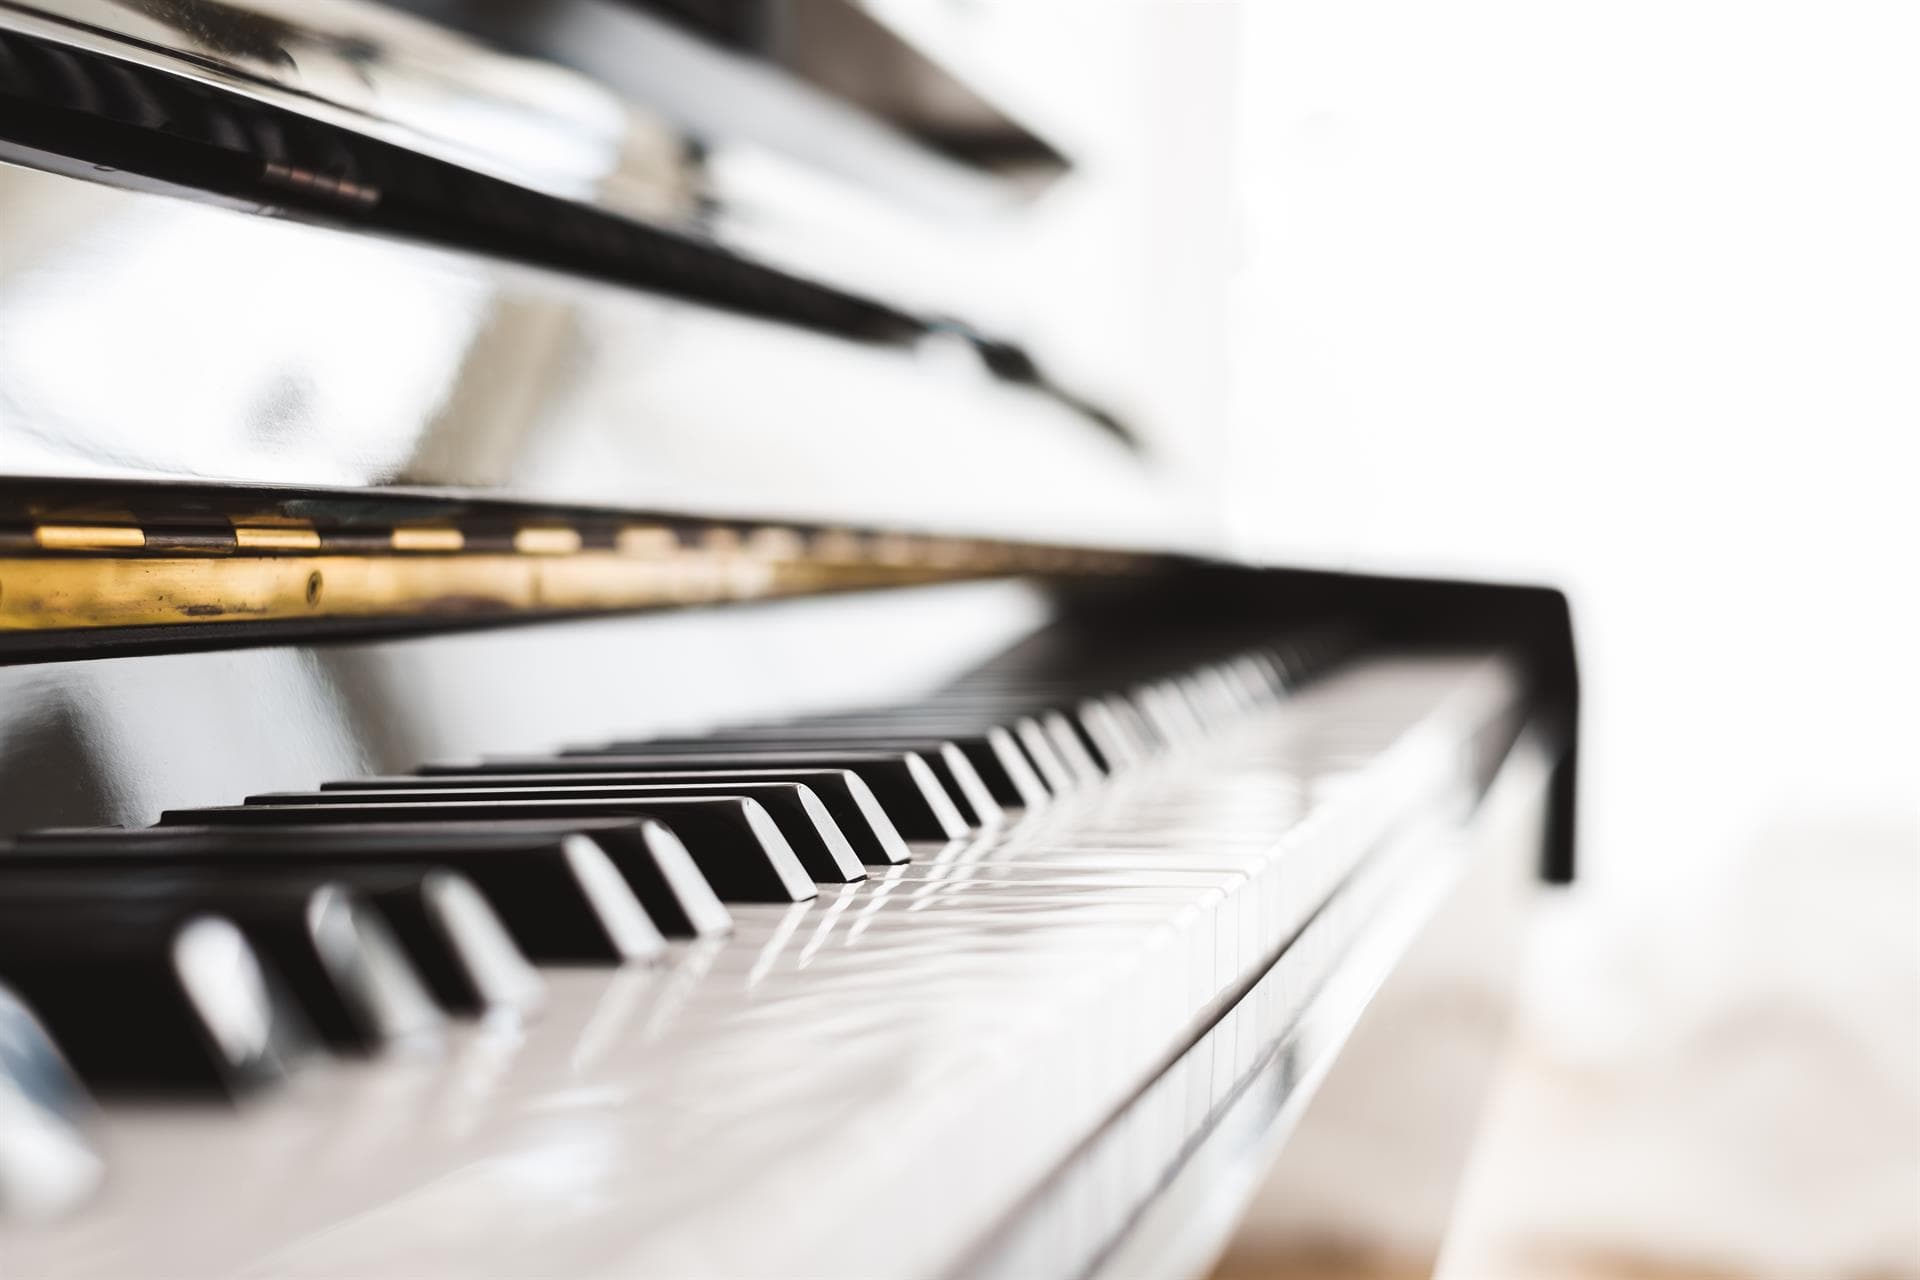  ¿Quieres comprar un piano o teclado? ¡Elige Clef Music!